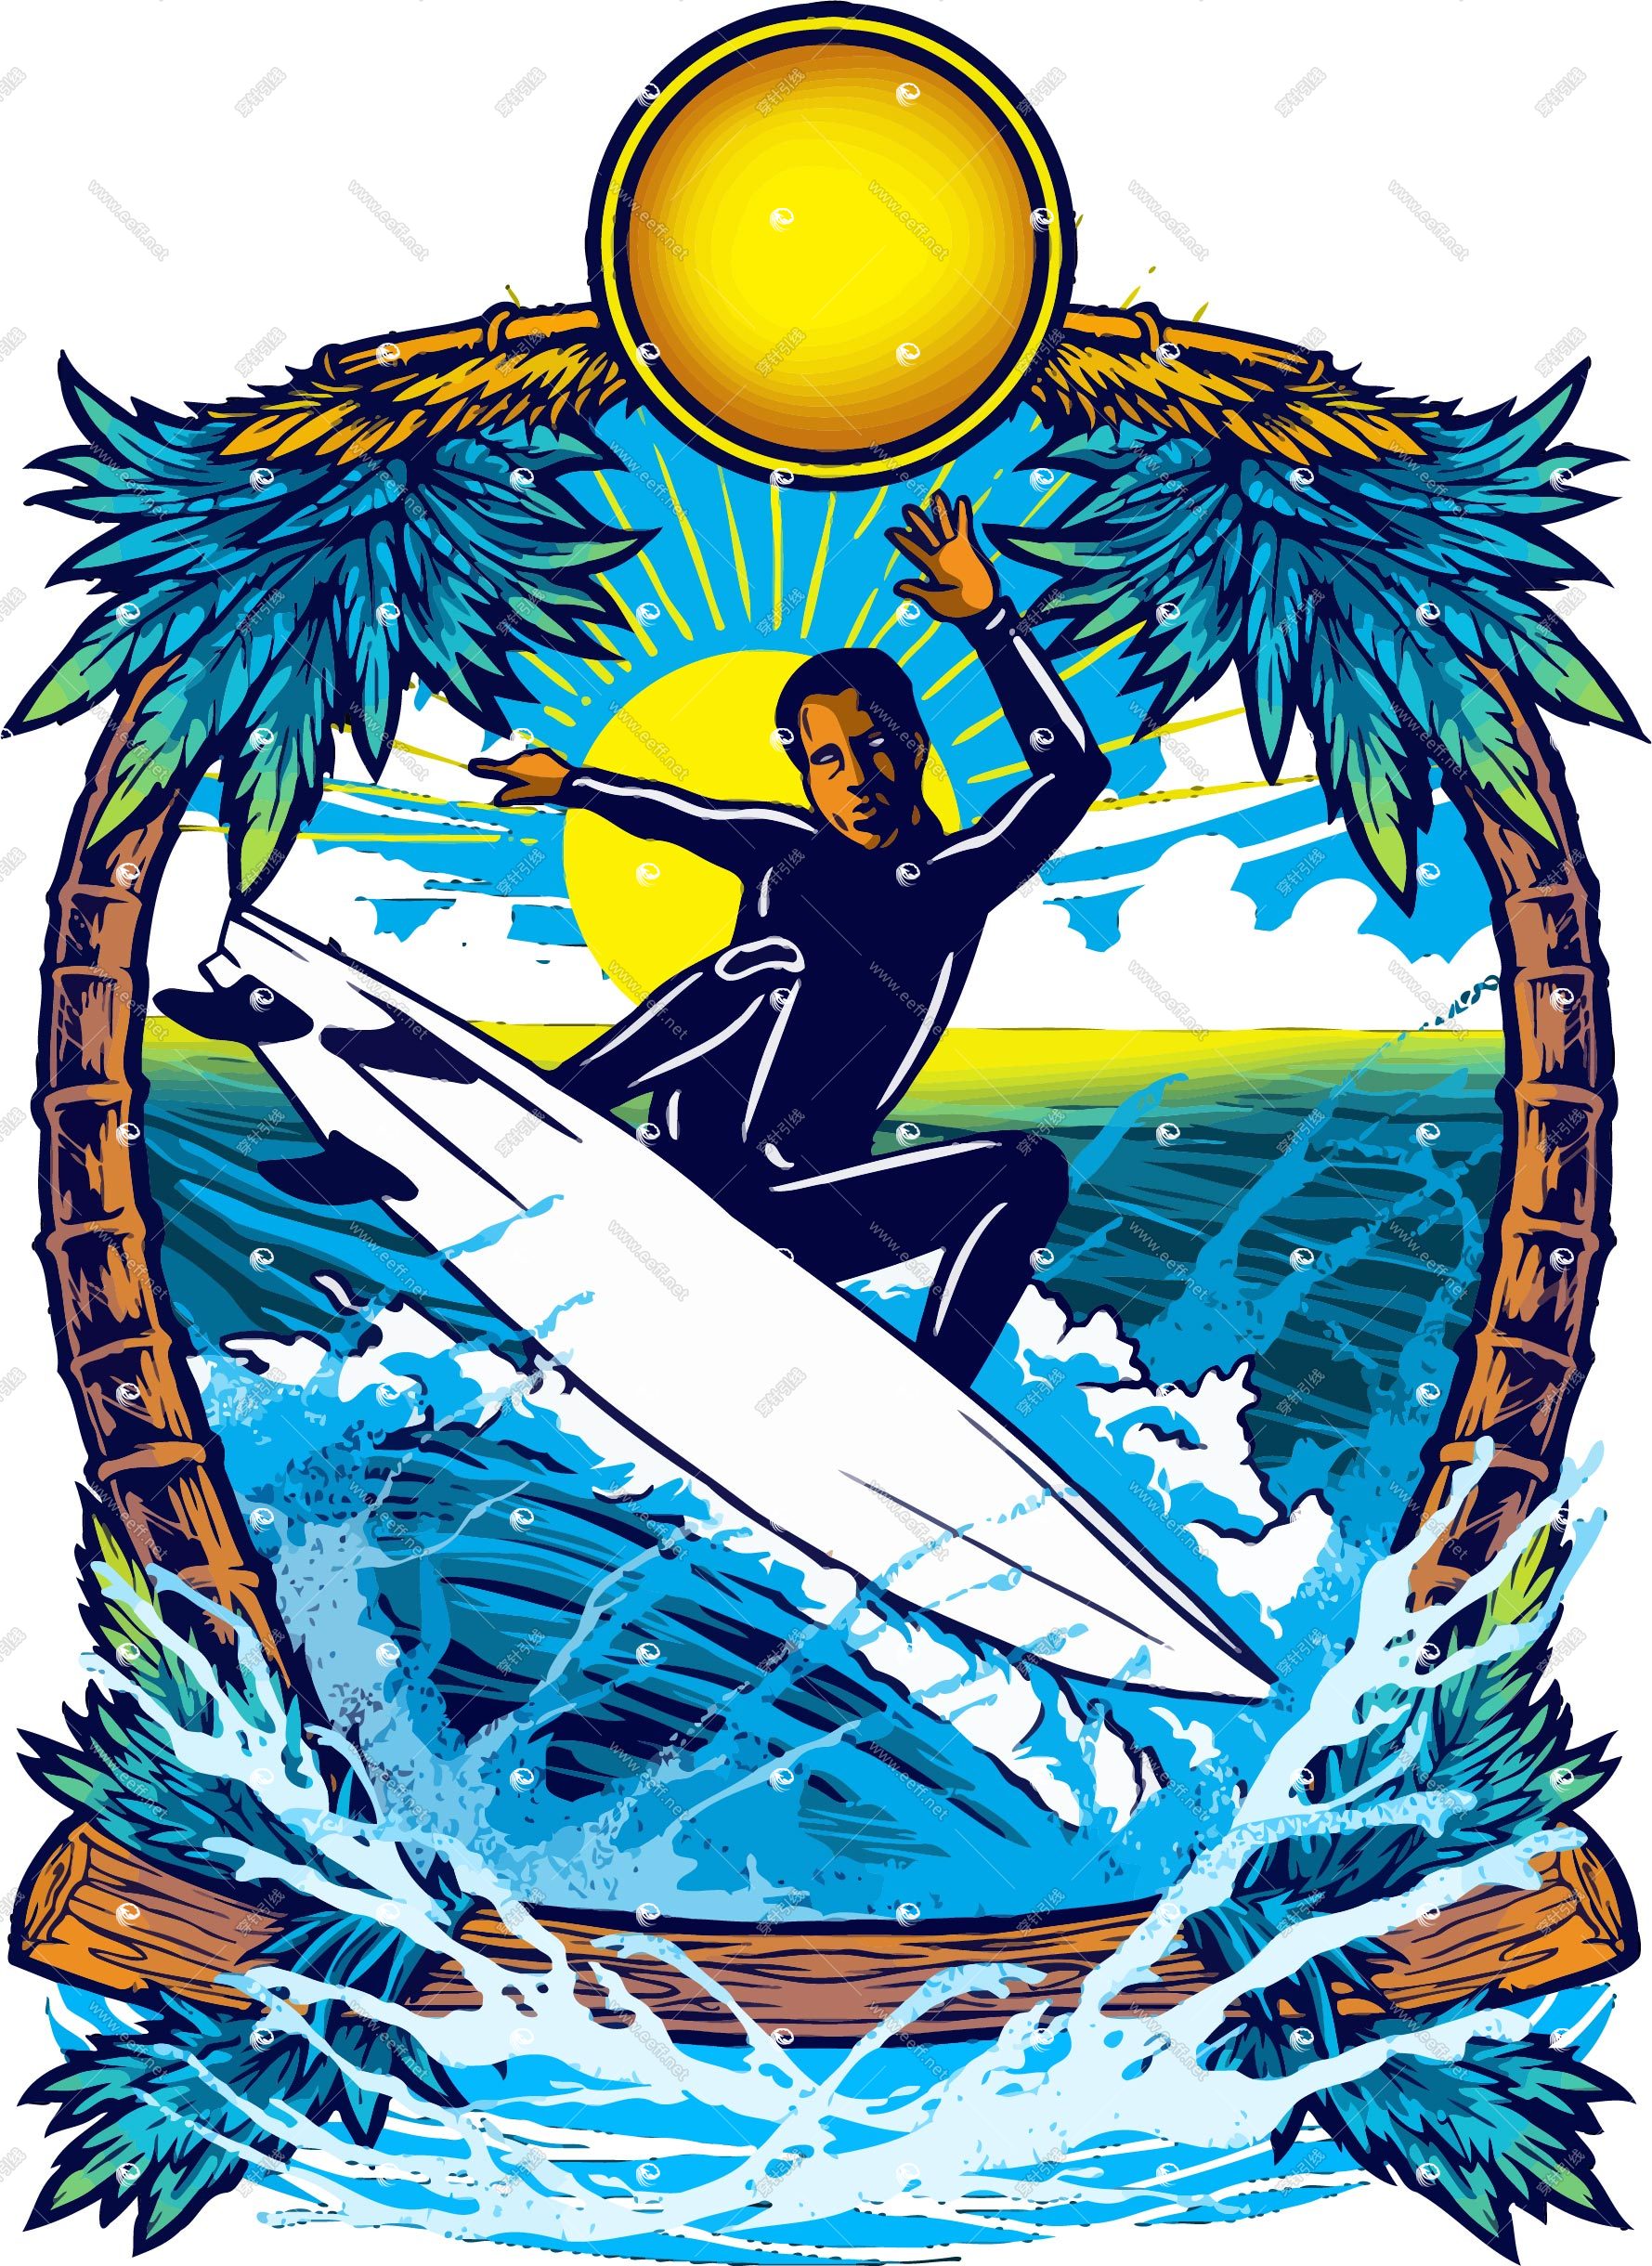 surfing-1